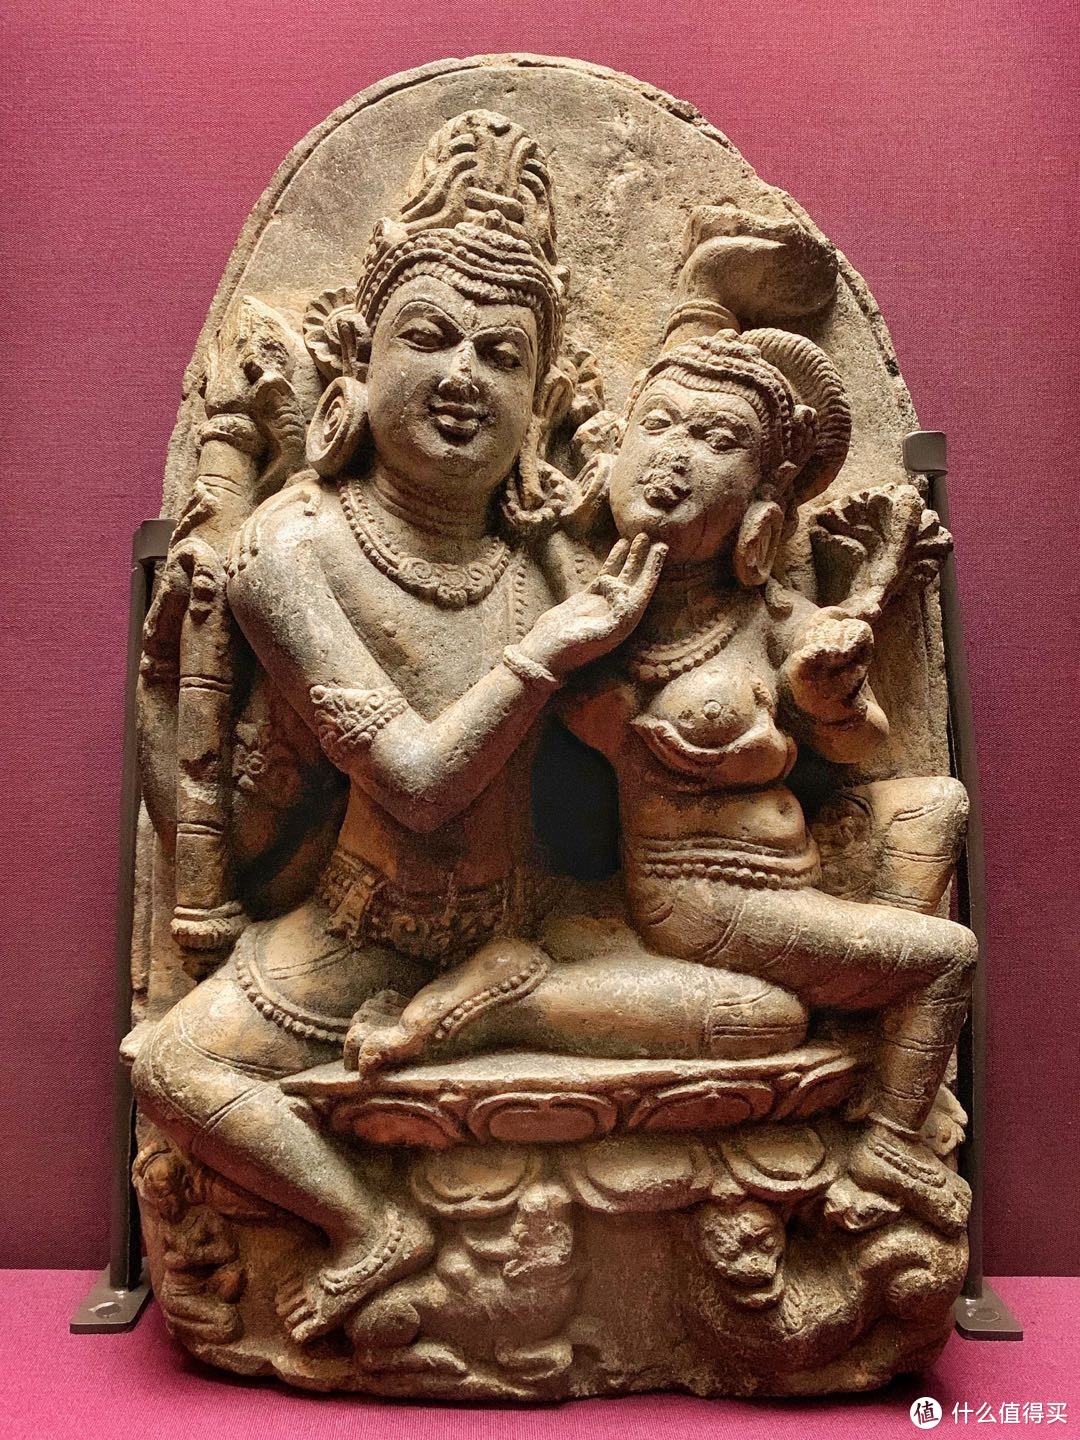 056 湿婆与帕尔瓦蒂雕像 900-1000年 印度